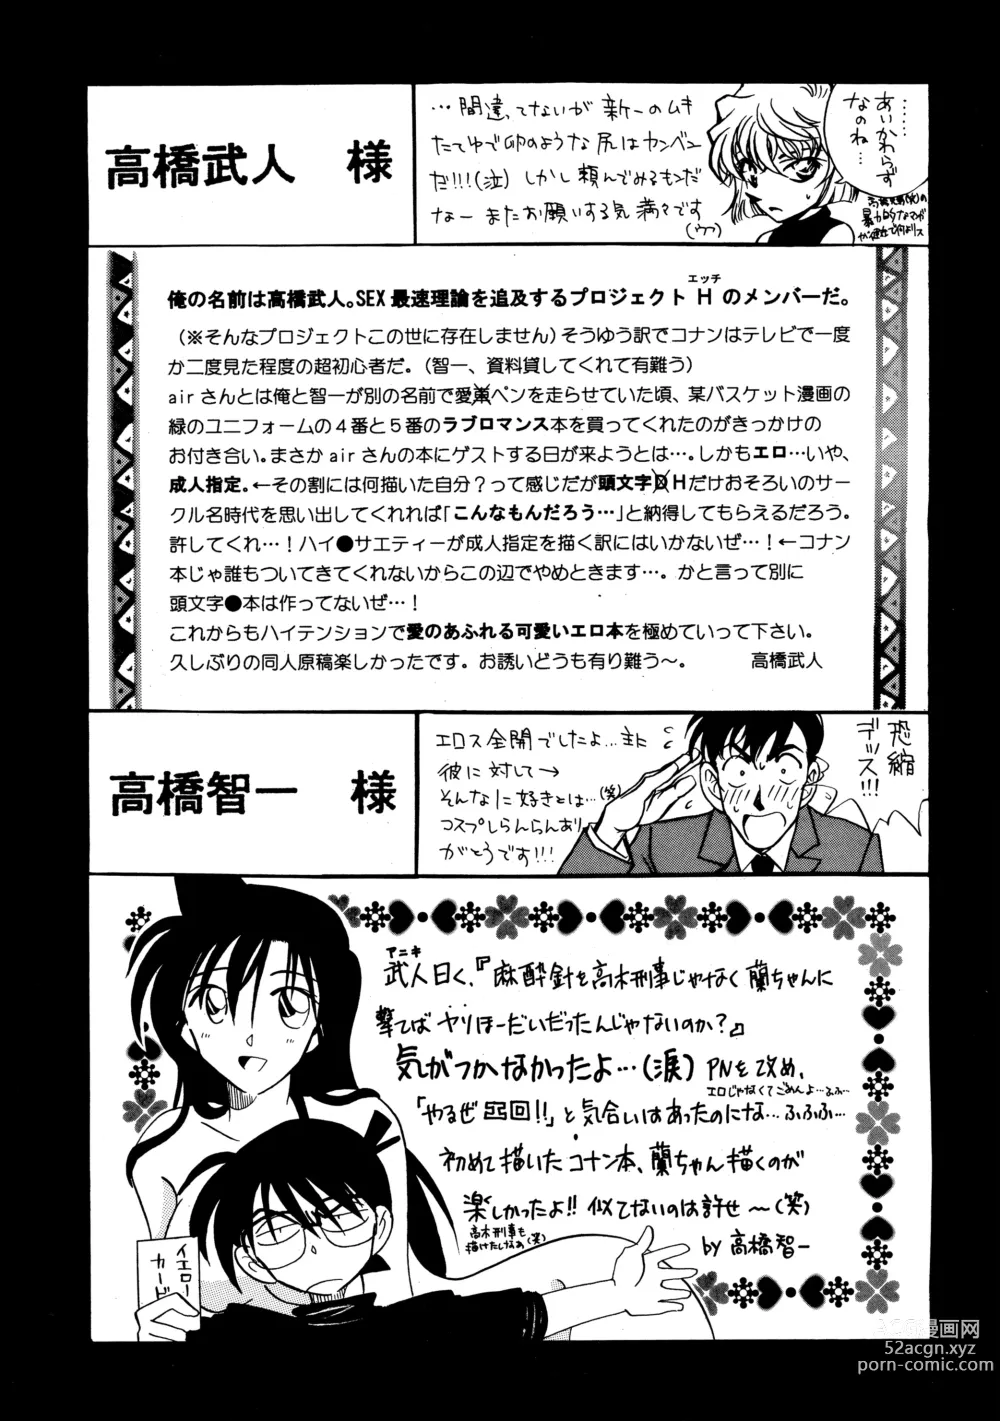 Page 36 of doujinshi Beika Saga Shoutengai Sono Ichi